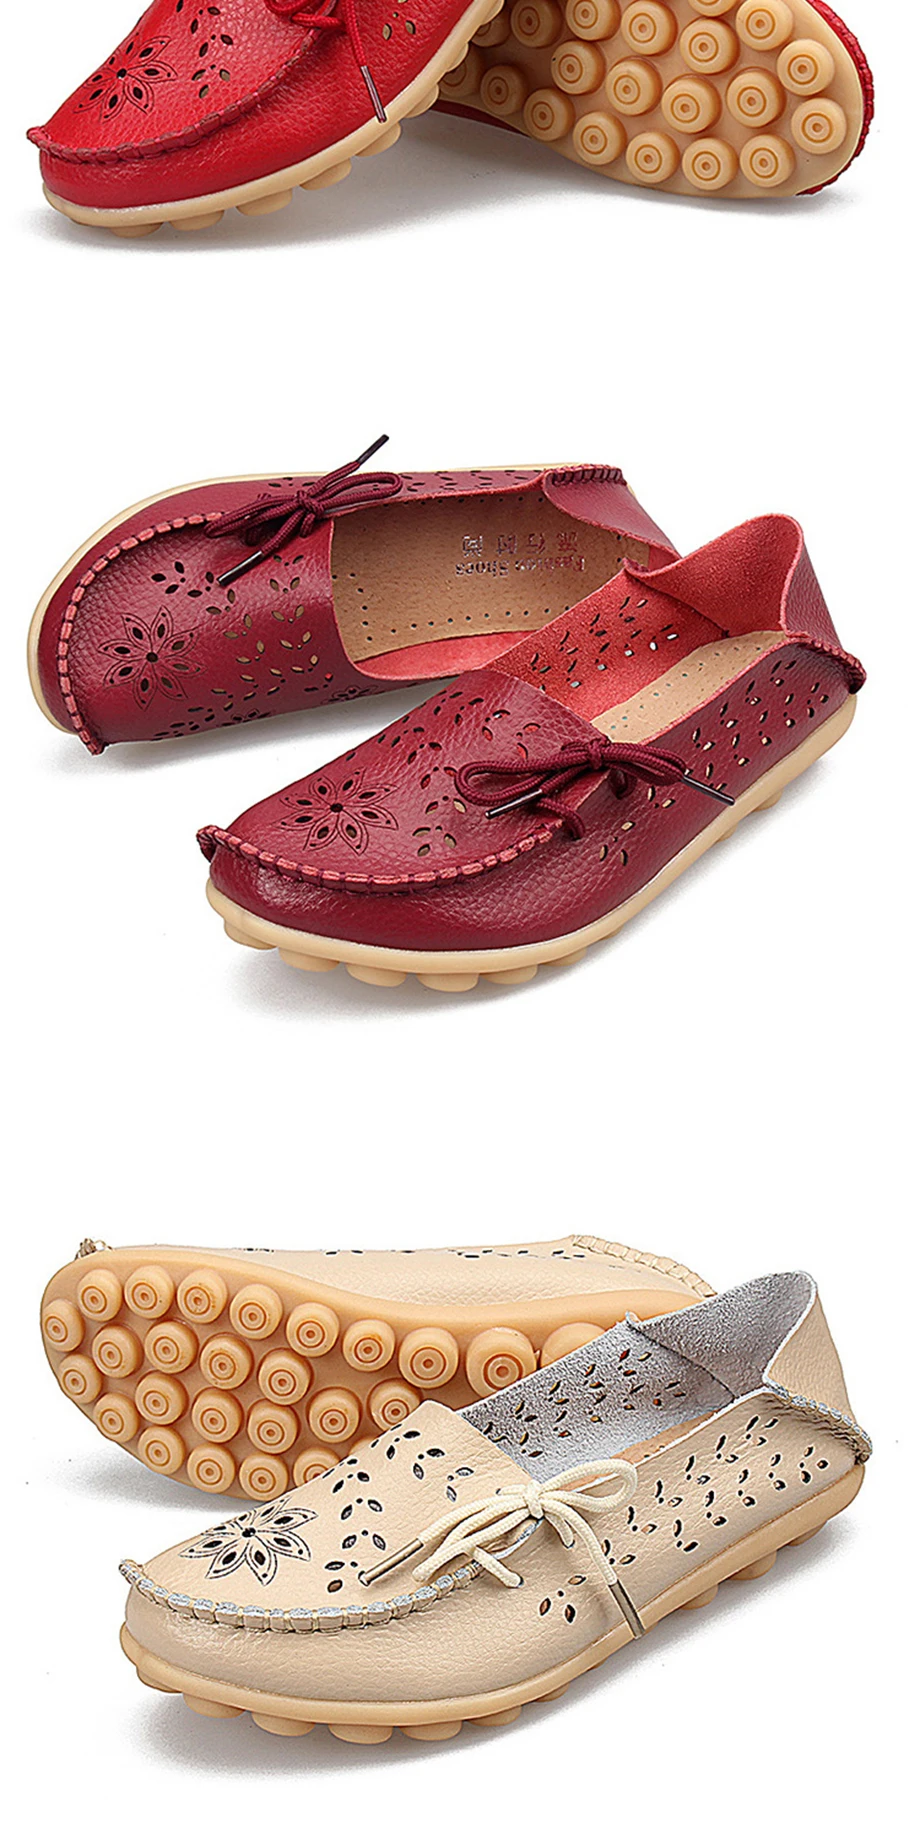 QMJHVX/Новая модная повседневная обувь для мам из натуральной кожи на плоской подошве, женские лоферы для вождения автомобиля, мокасины на ноге, мягкая женская обувь